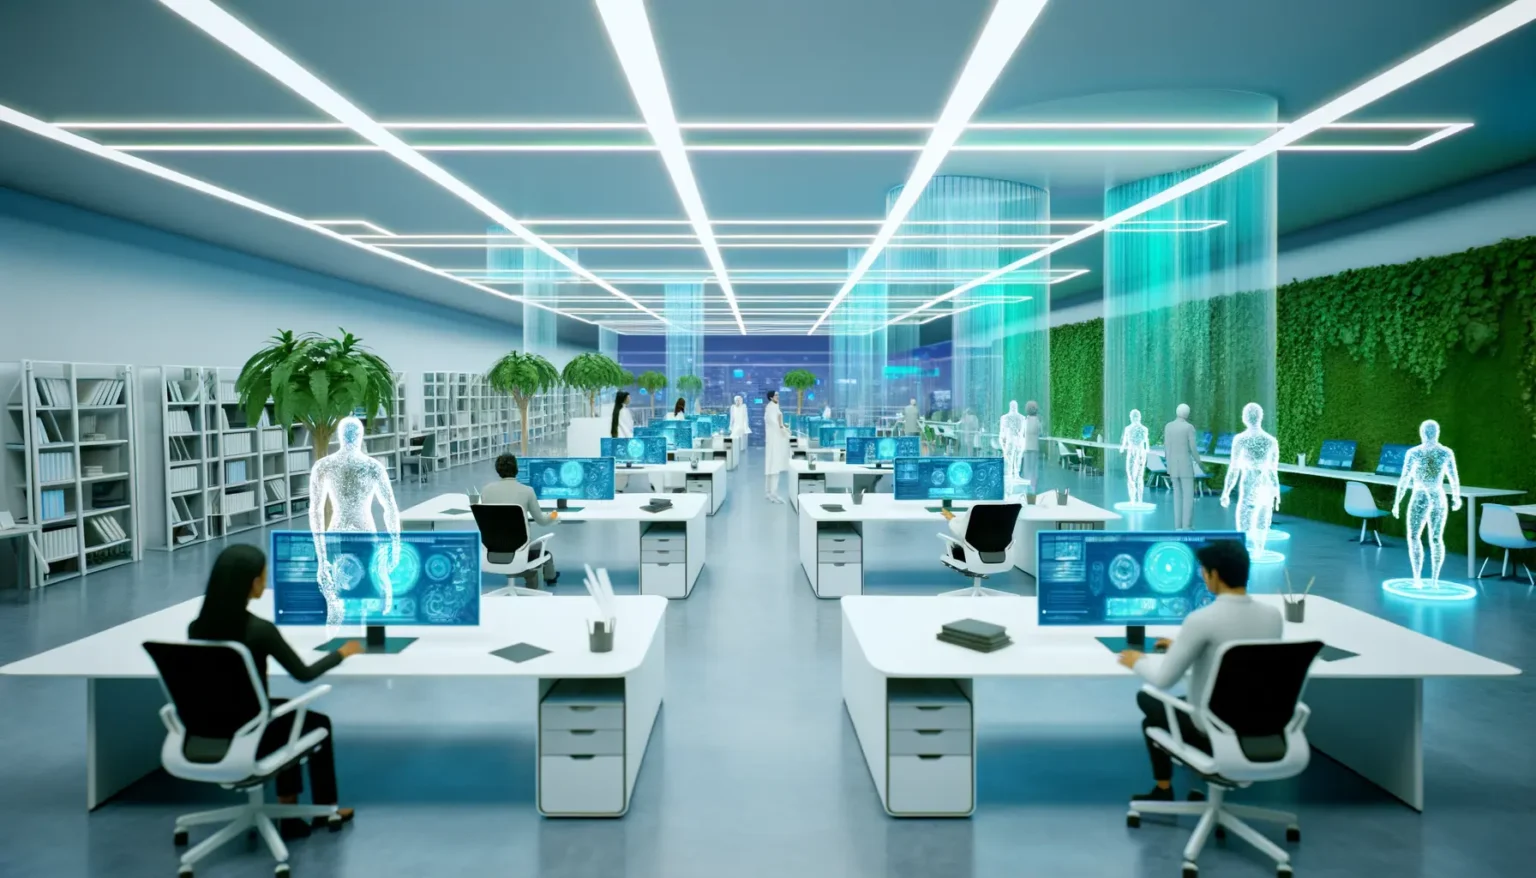 Modernes Büro mit futuristischer Ausstattung und Design. Die Szene zeigt Personen, die an weißen Schreibtischen mit Computerbildschirmen arbeiten. Überall sind holographische Projektionen und interaktive Bildschirme zu sehen. Der Raum ist mit blauen und weißen LED-Leisten beleuchtet, und es gibt lebendige Pflanzenwände für eine grüne Atmosphäre. Transparente holographische Figuren, die wie virtuelle Assistenten aussehen, interagieren mit einigen der Mitarbeiter.